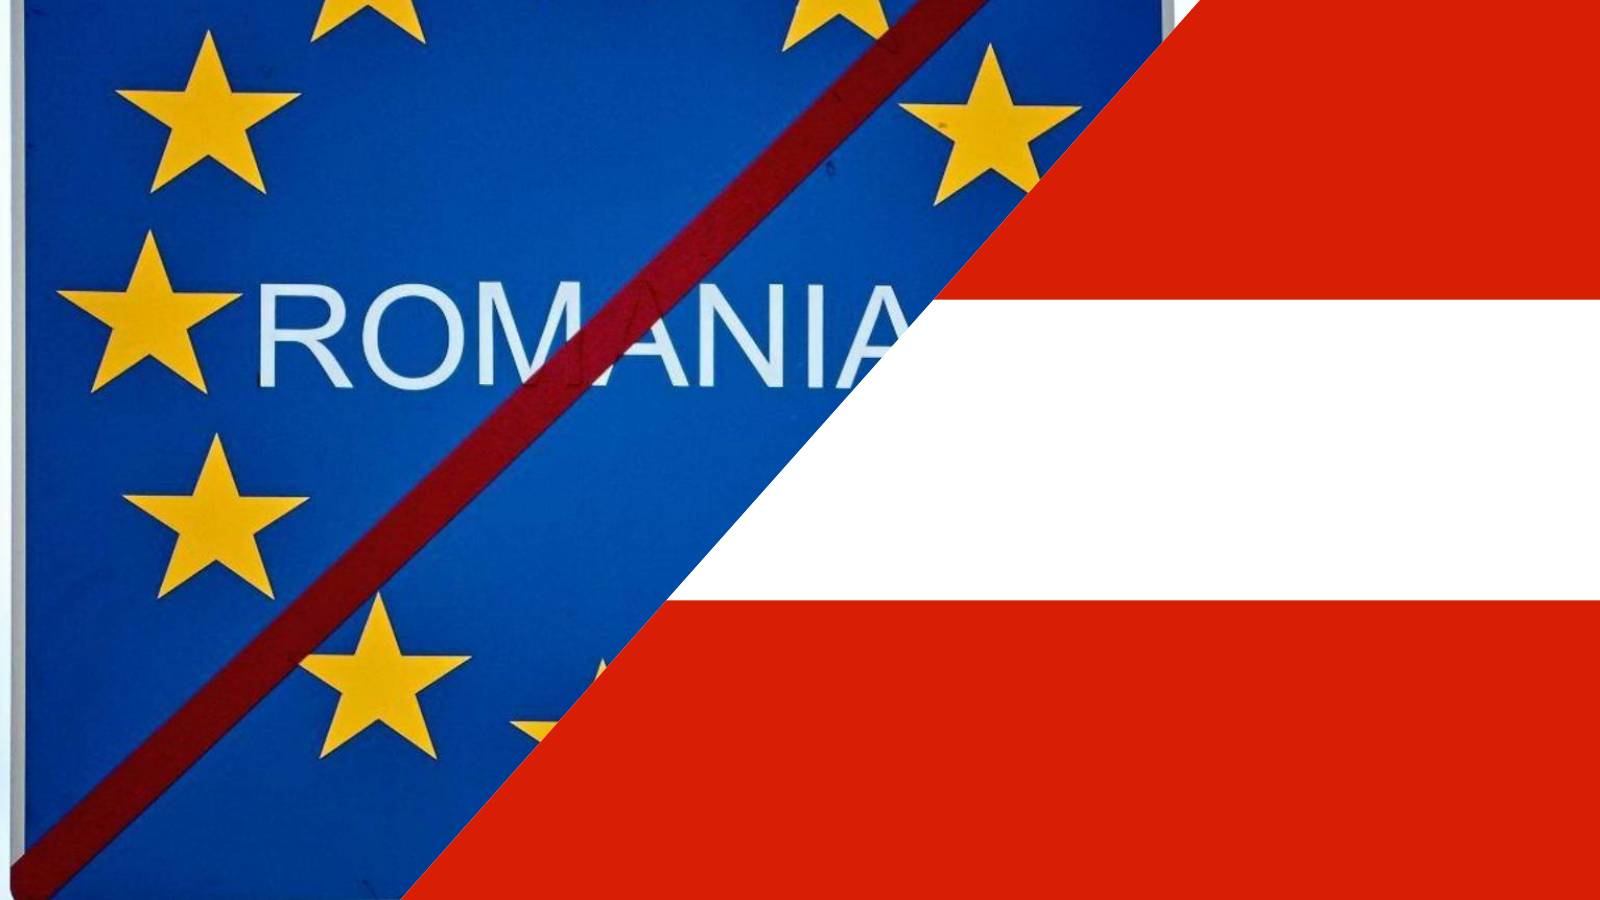 Austria zgadza się z ogłoszonym przez wicekanclerza powodem zablokowania przystąpienia Rumunii do strefy Schengen